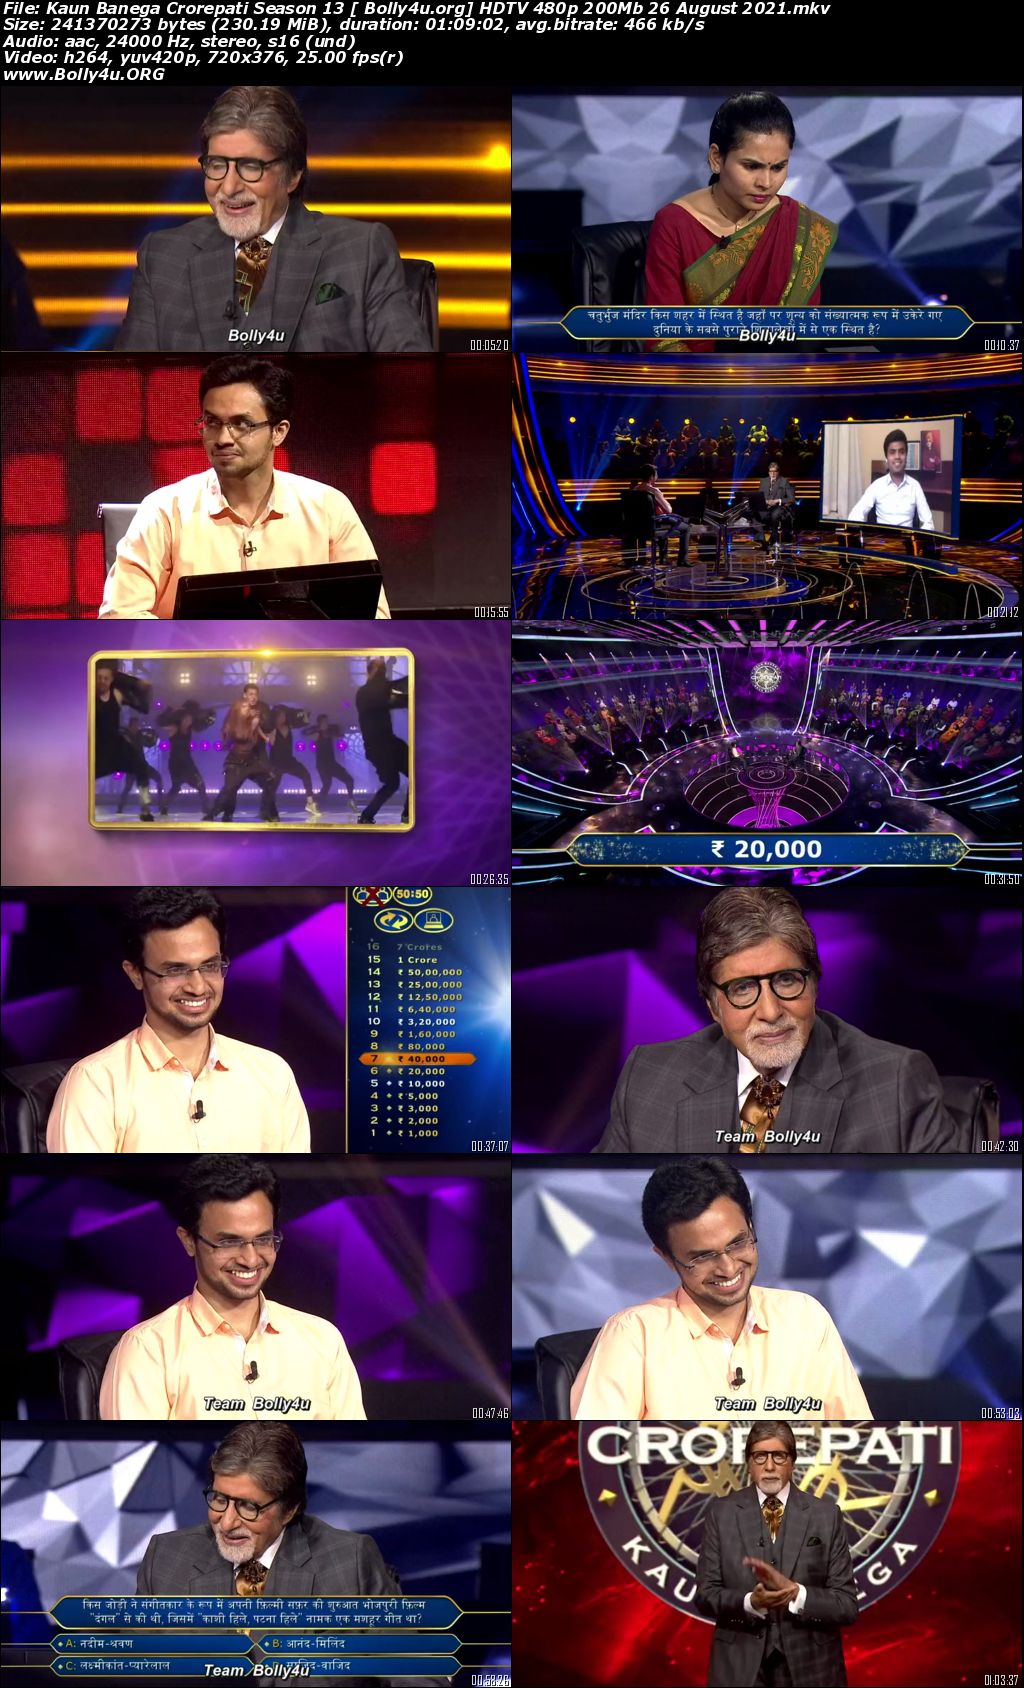 Kaun Banega Crorepati S13 HDTV 480p 200Mb 26 August 2021 Download